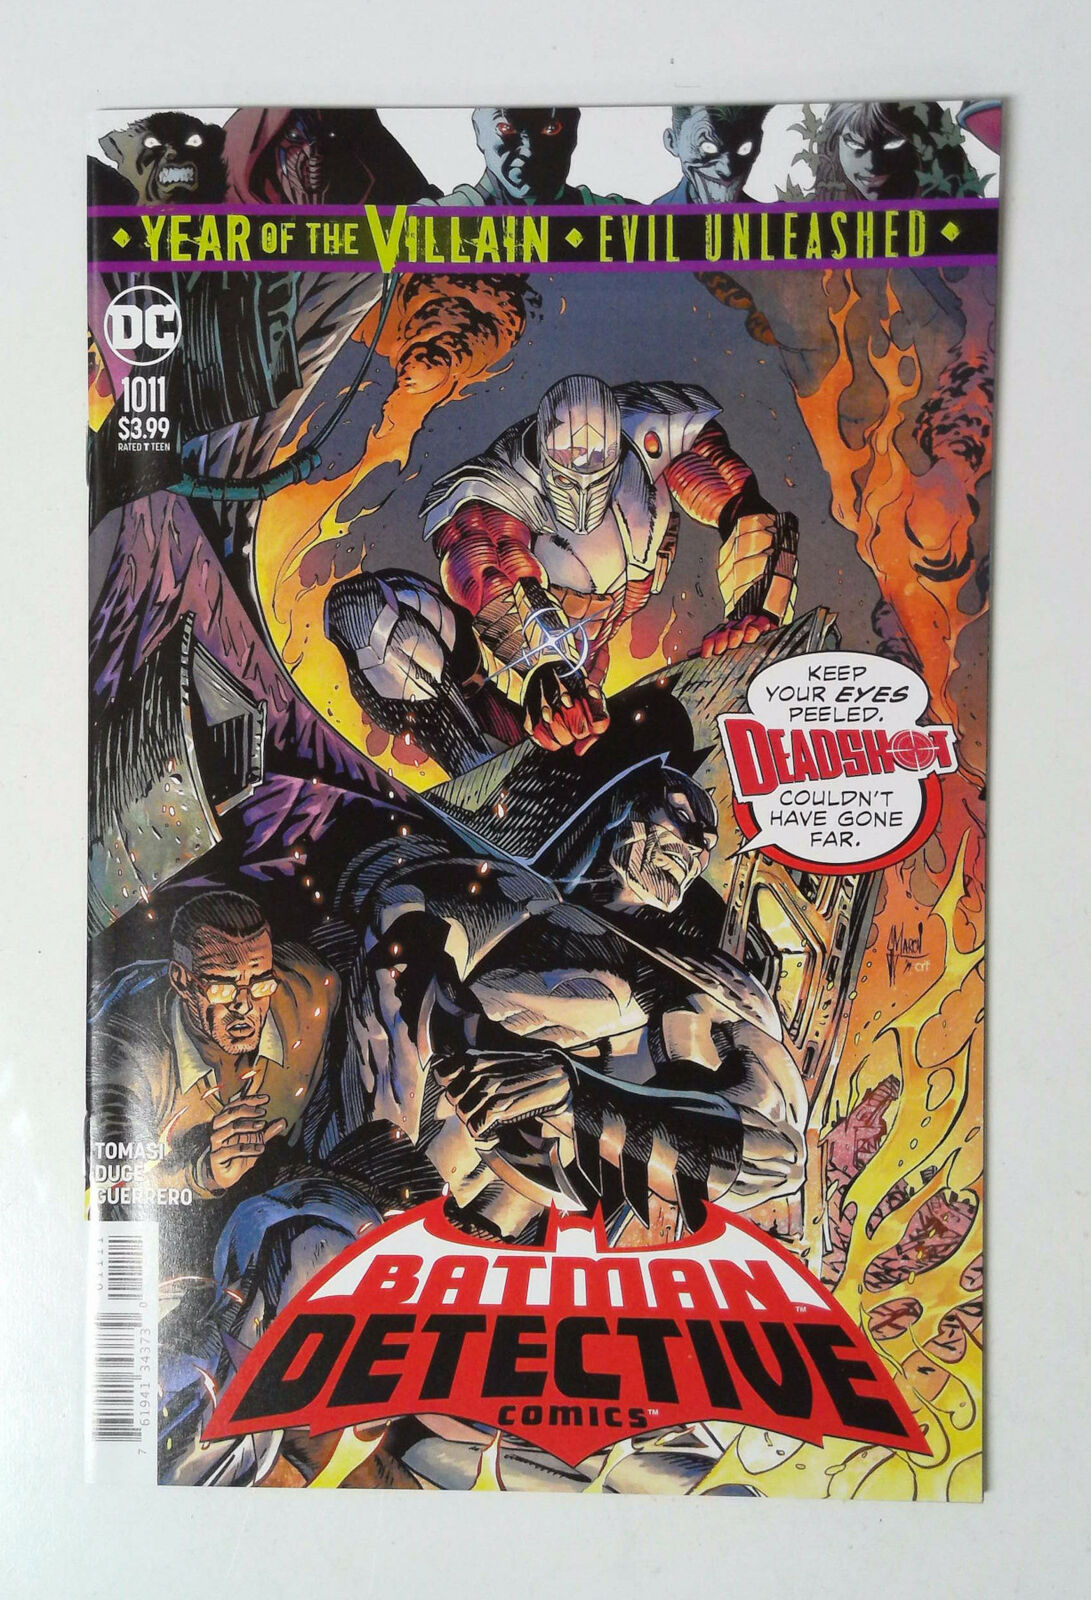 Detective Comics Vol 2 #1011 DC Comics (2019) Guillem March 1st Print Comic Book